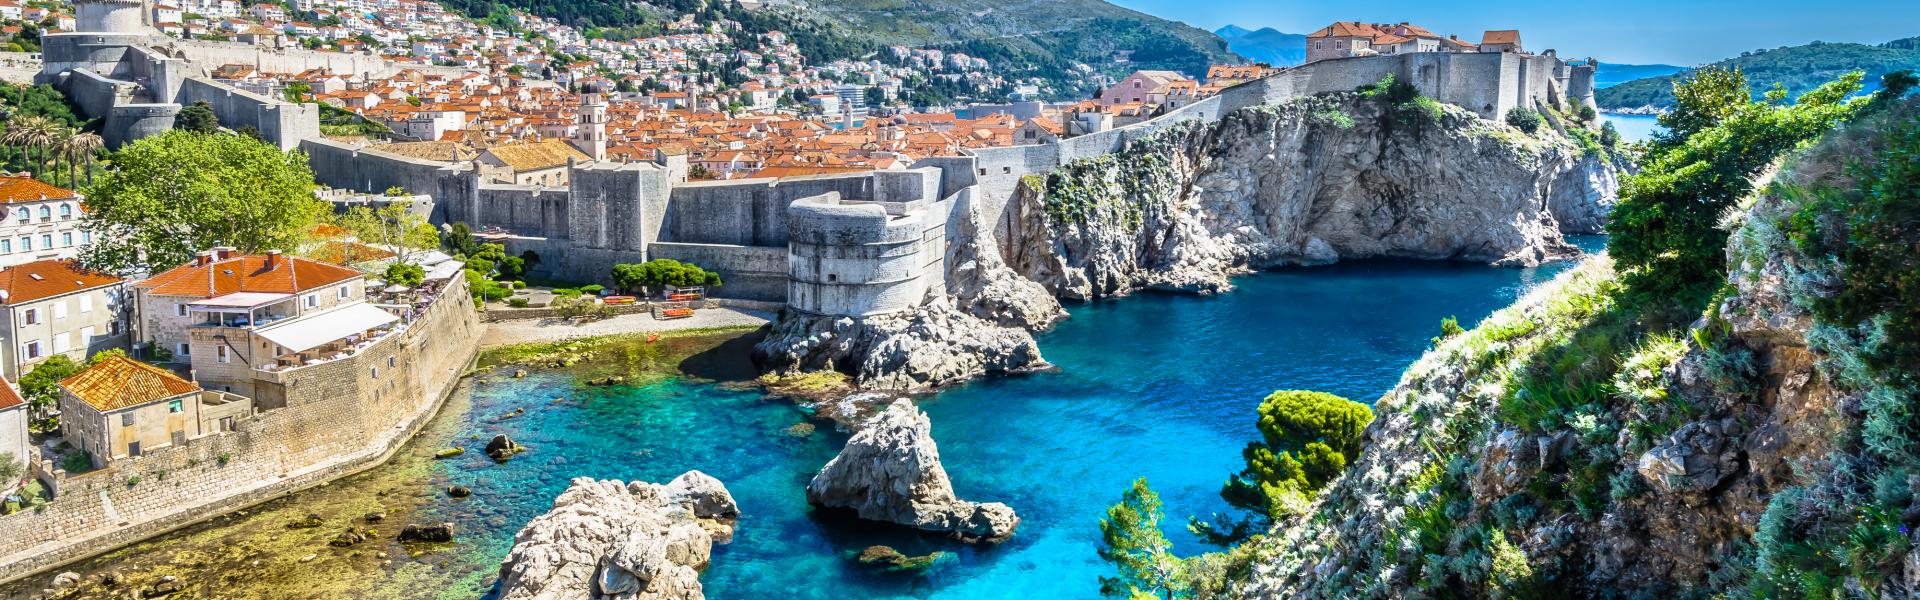 Ferienwohnungen und Ferienhäuser in Dalmatien - atraveo